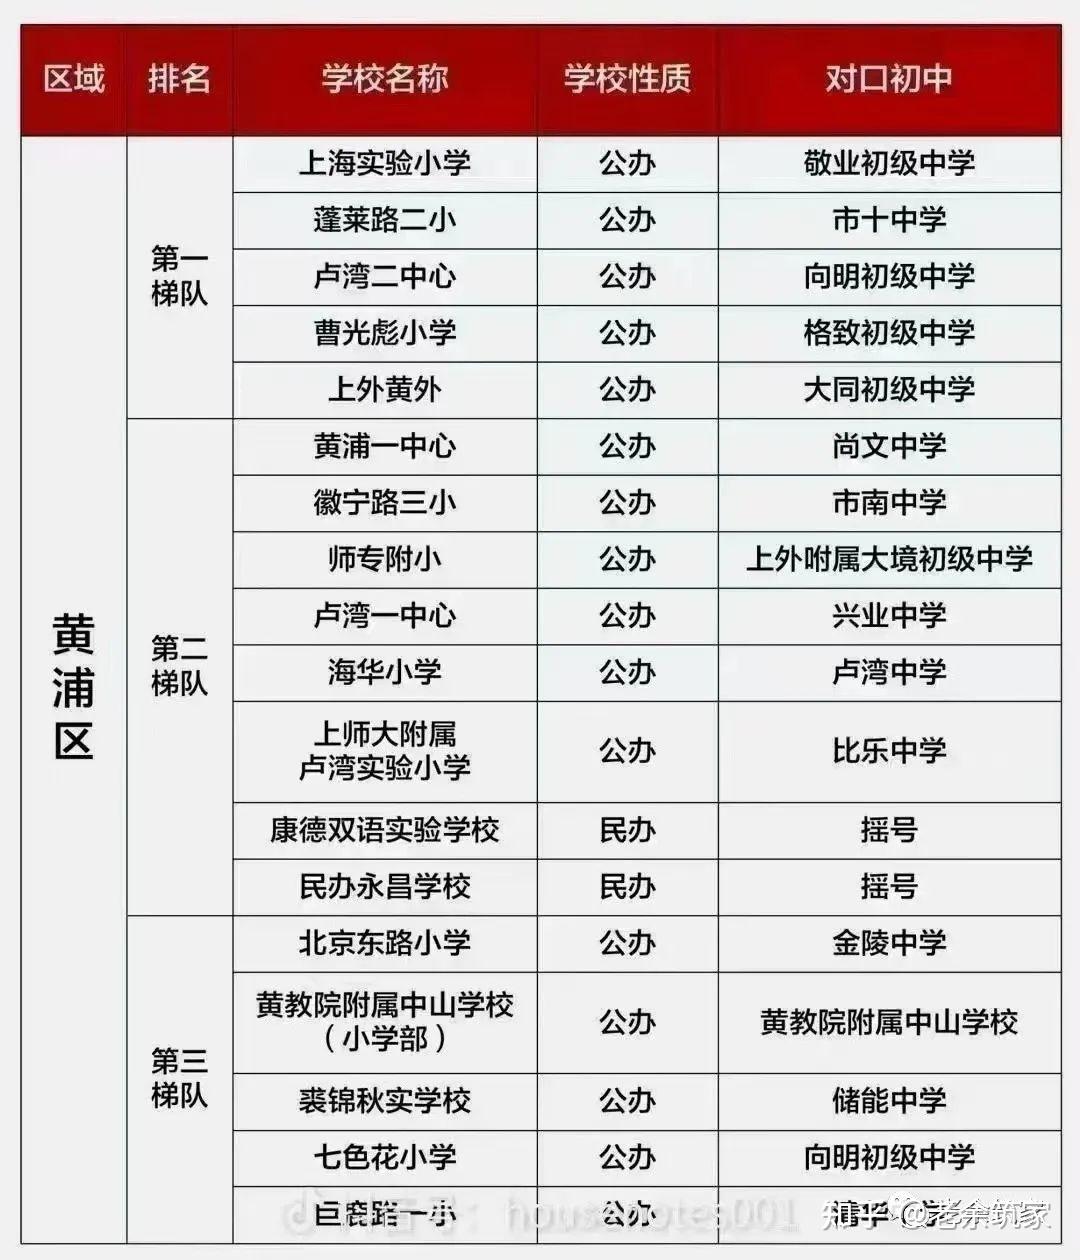 《上海学区房排序规则》